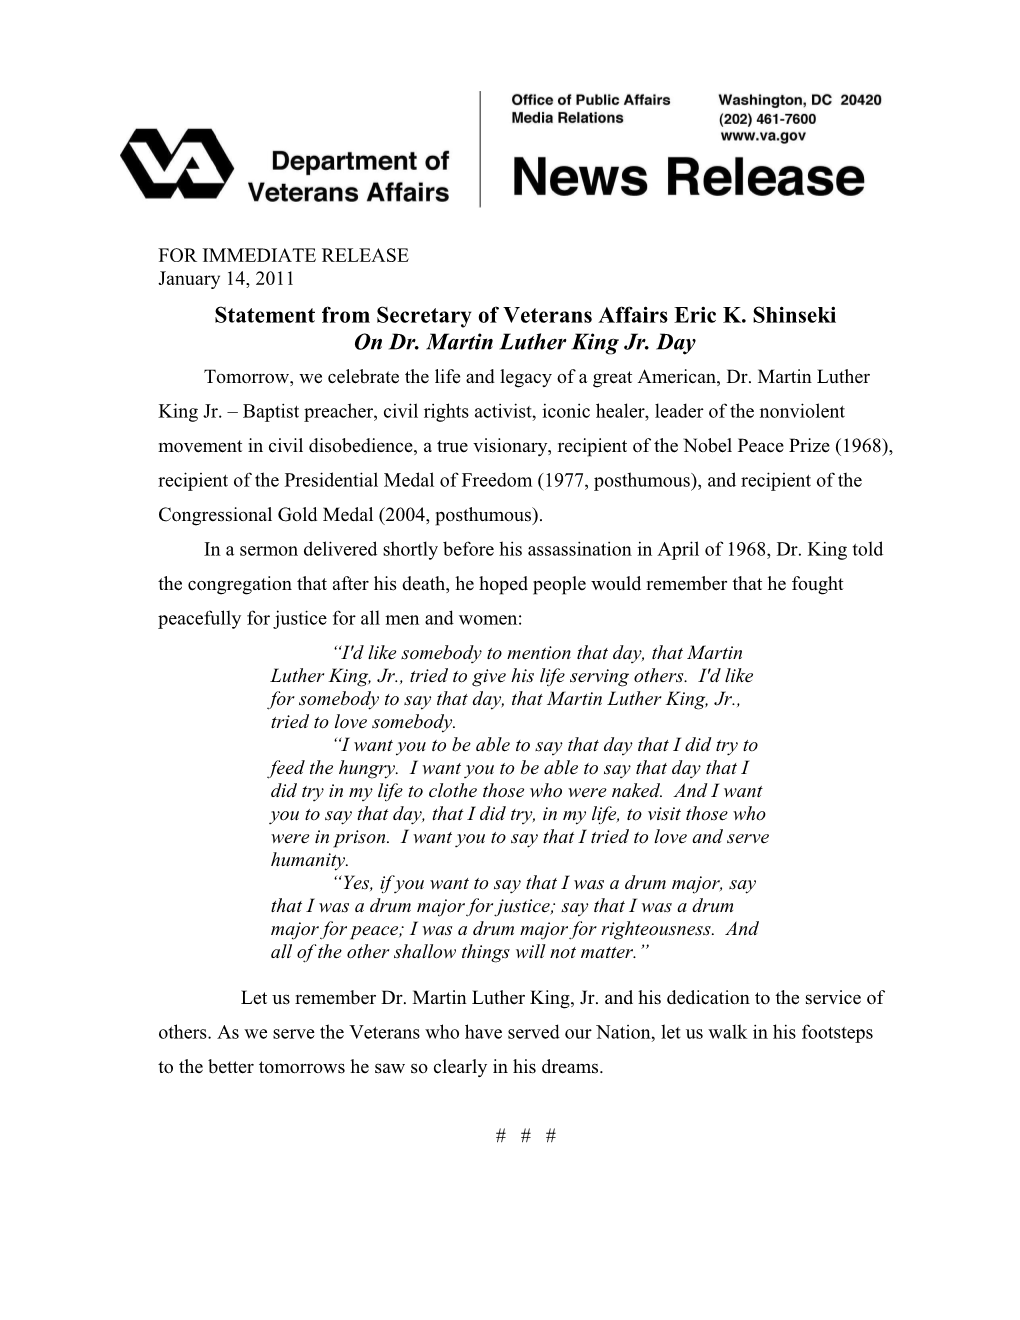 Statement from Secretary of Veterans Affairs Eric K. Shinseki